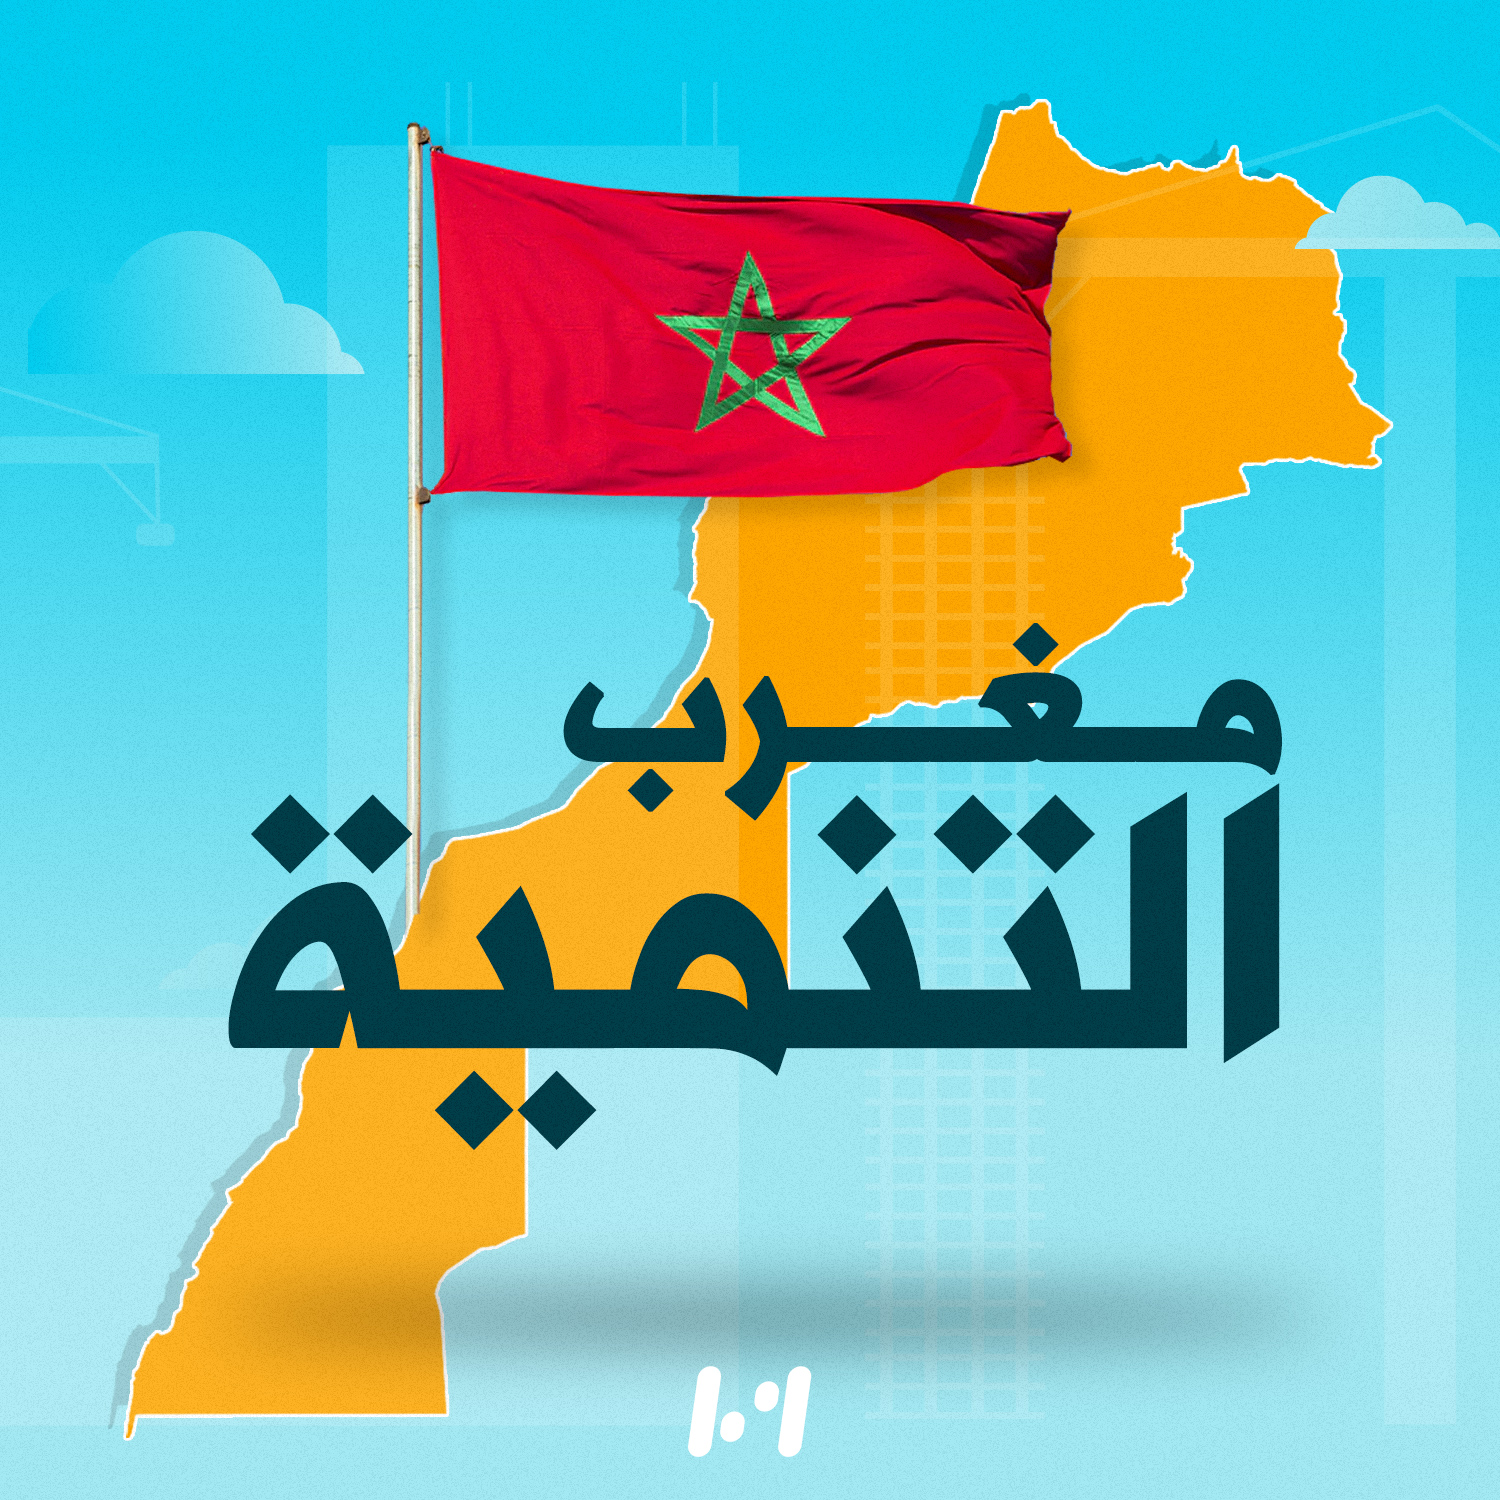 بمؤهلات دولية المغرب حاضر بقوة كوجهة مميزة للاستثمار